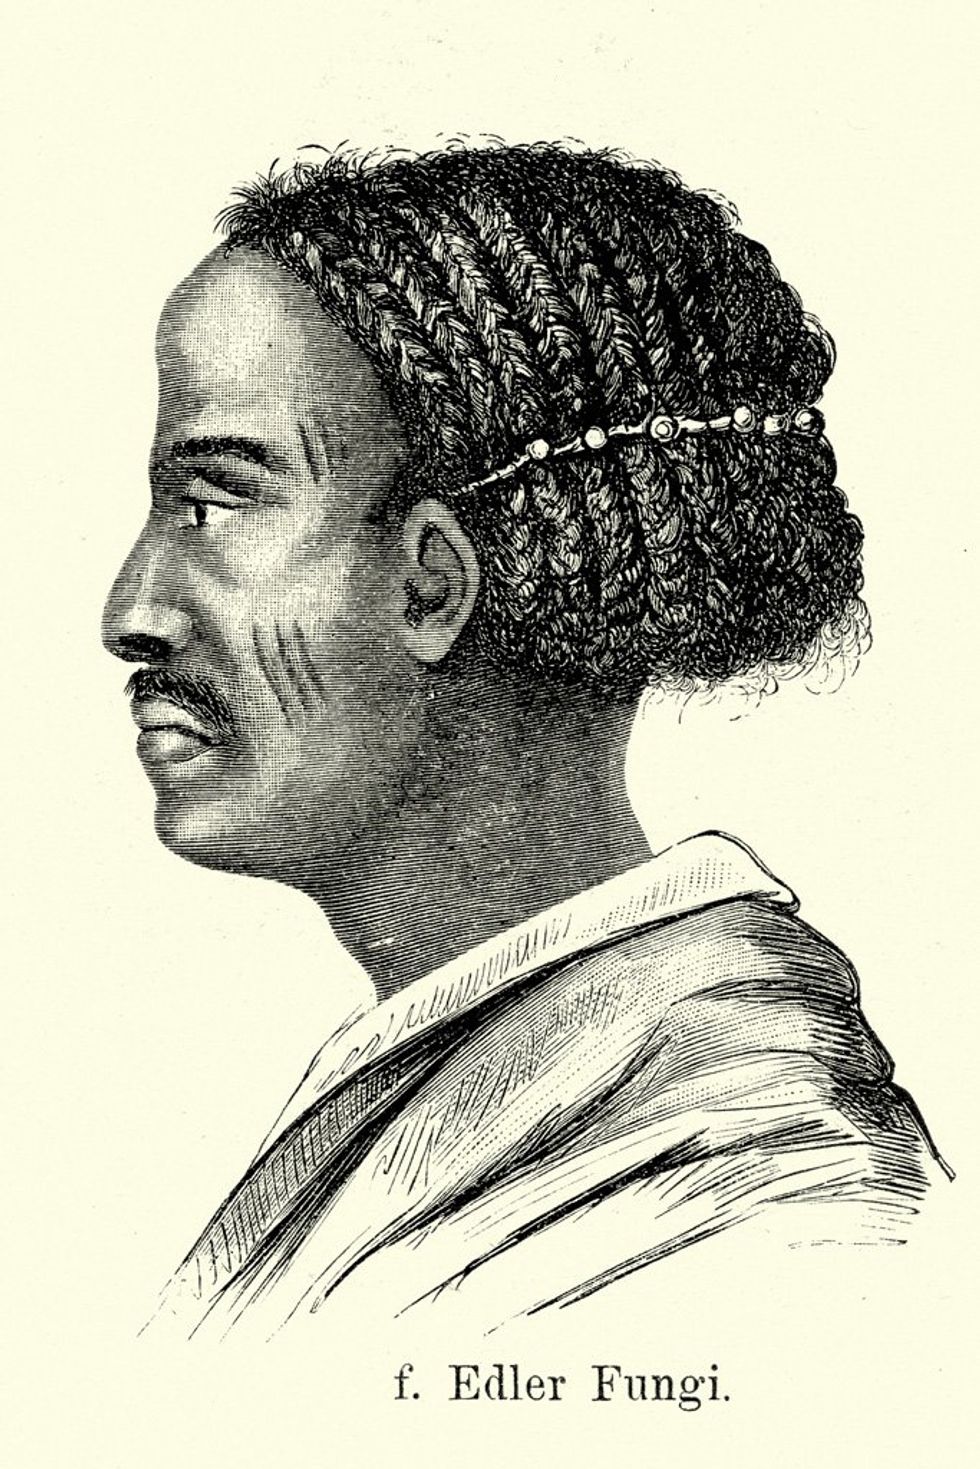 \u200bVintage engraving of a noble of Sudan. Ferdinand Hirts Geographische Bildertafeln,1886.